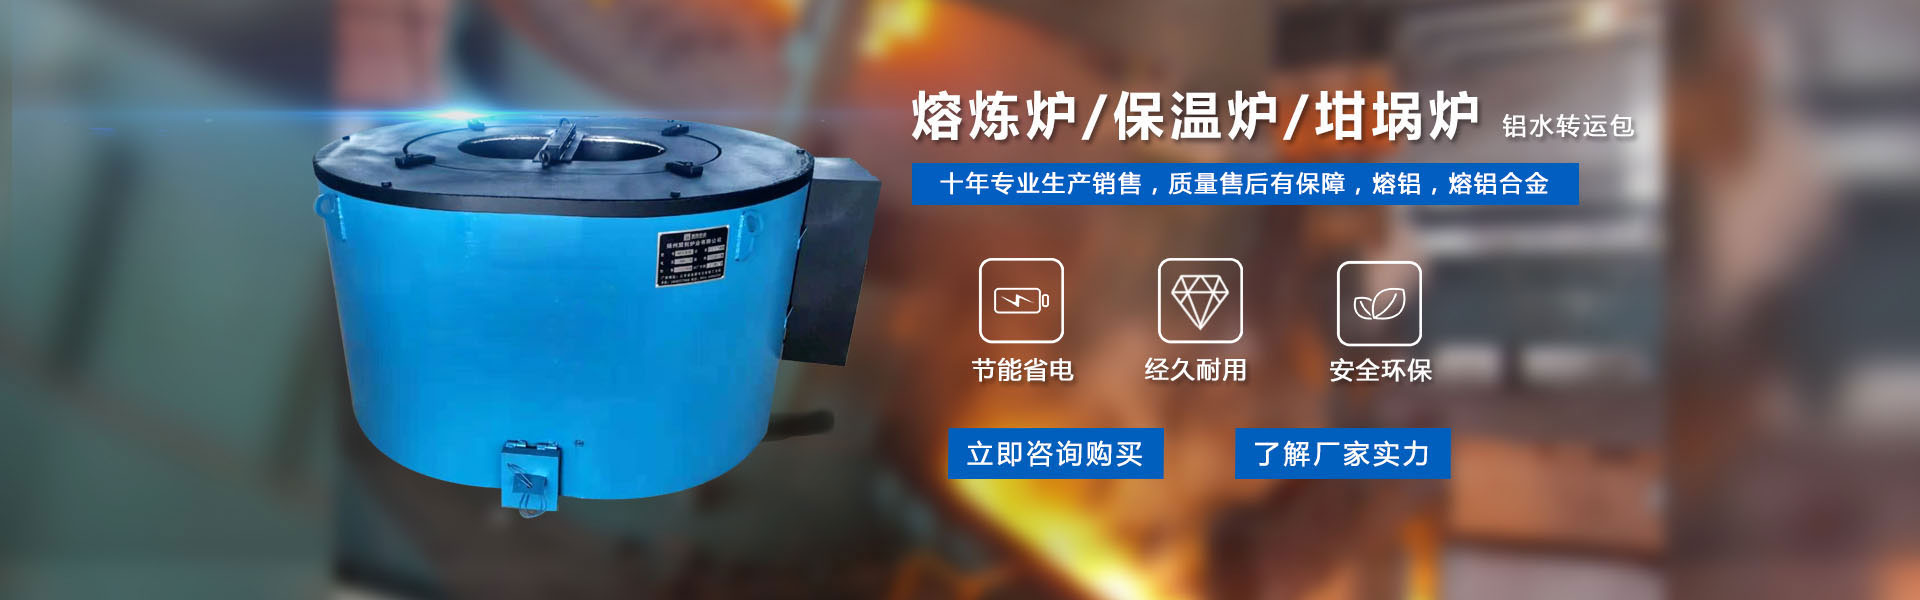 在线留言-扬州电炉-锌合金保温炉-铝合金熔化炉公司-盟创炉业